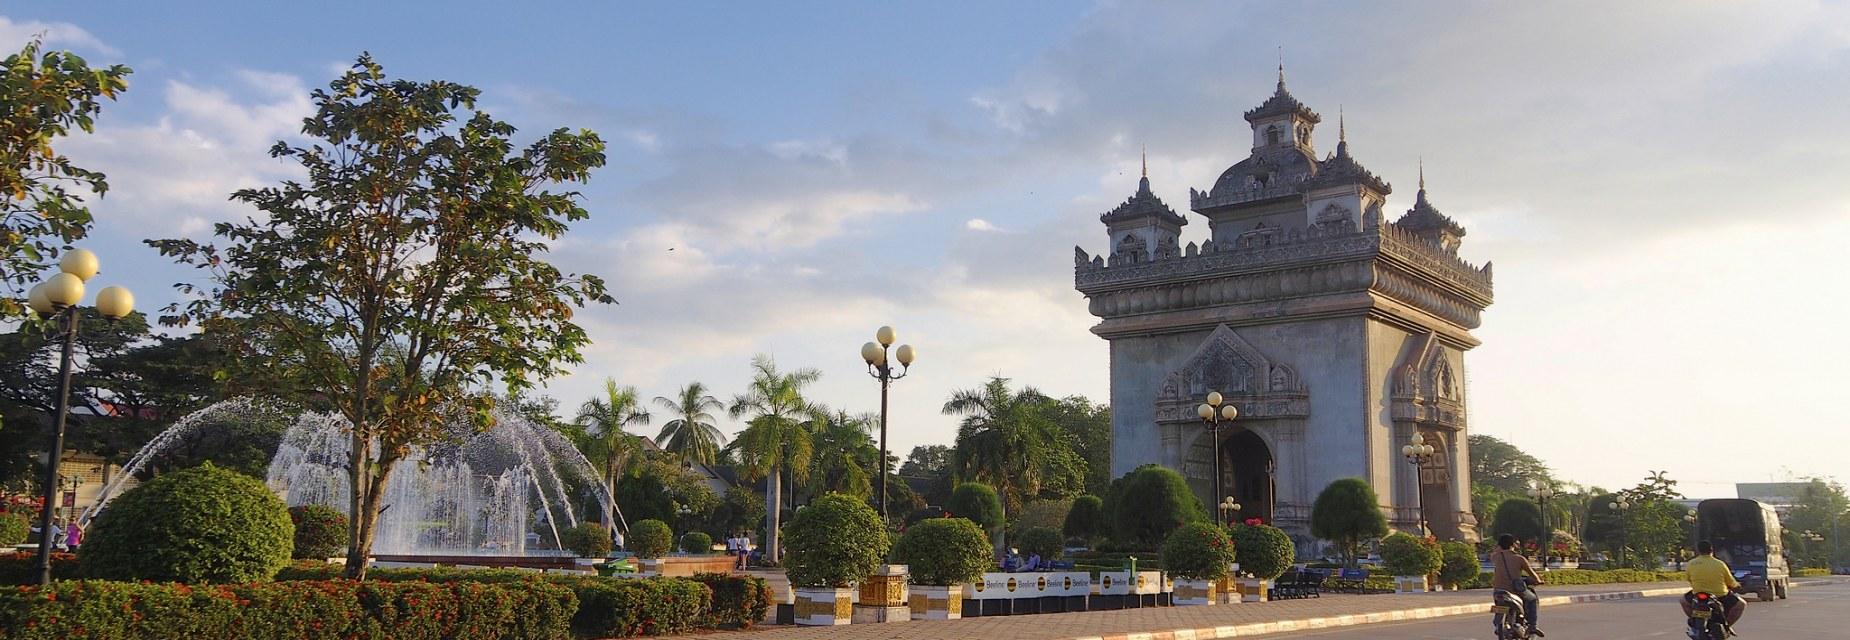 Le Patuxai, l'arc de triomphe laotien